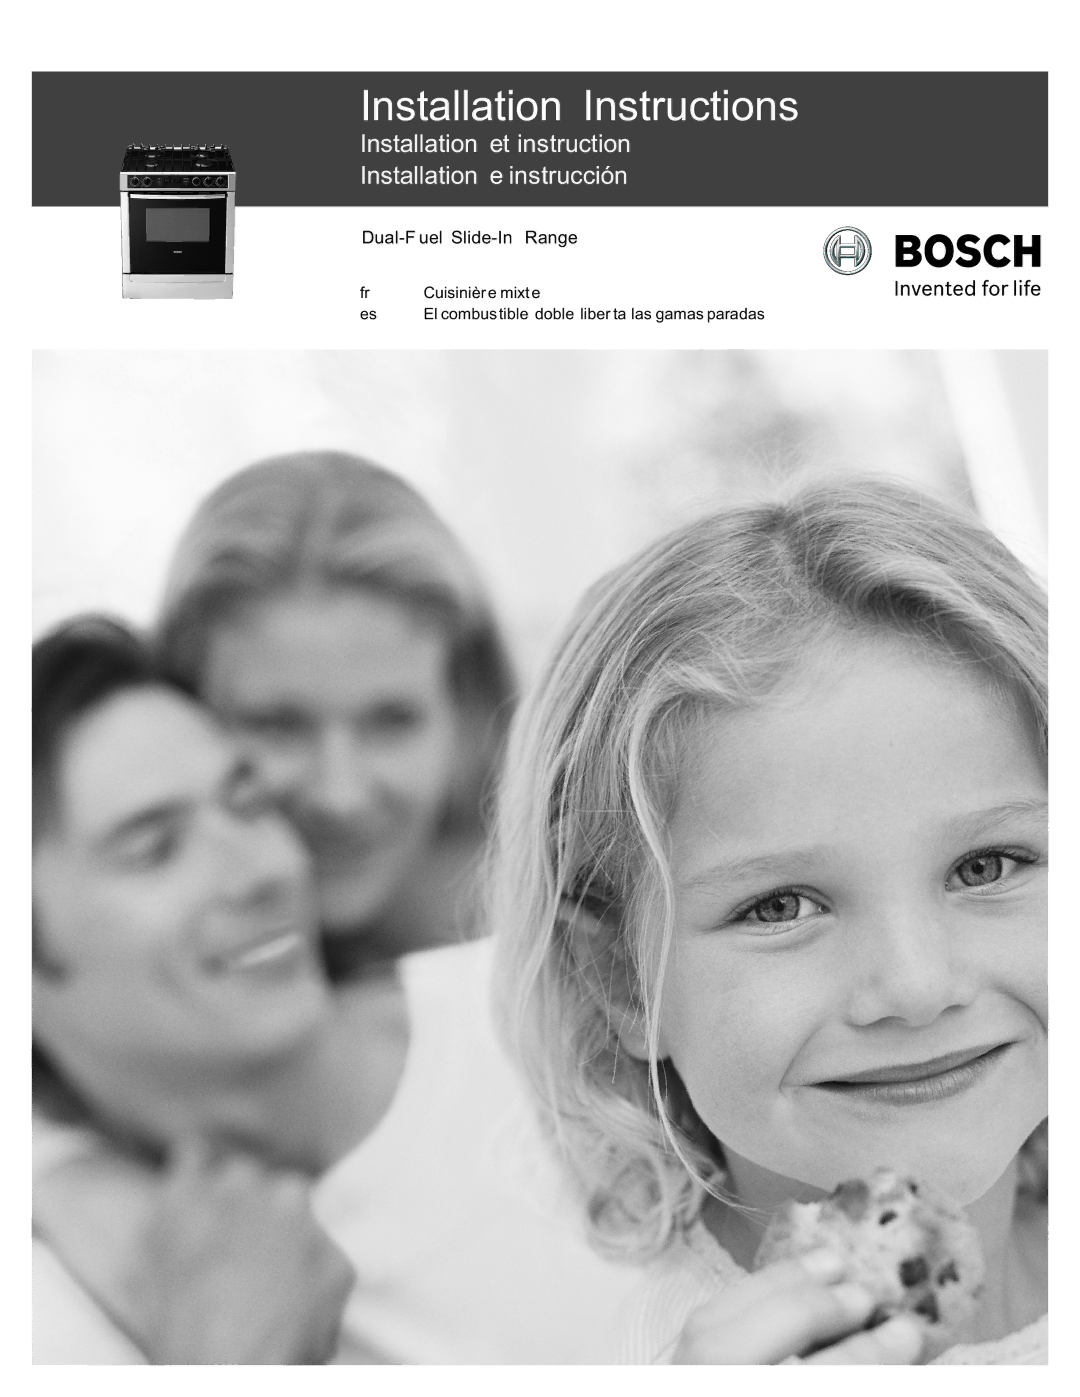 Bosch Appliances Dual-Fuel Slide-In Range installation instructions Installation Instructions 